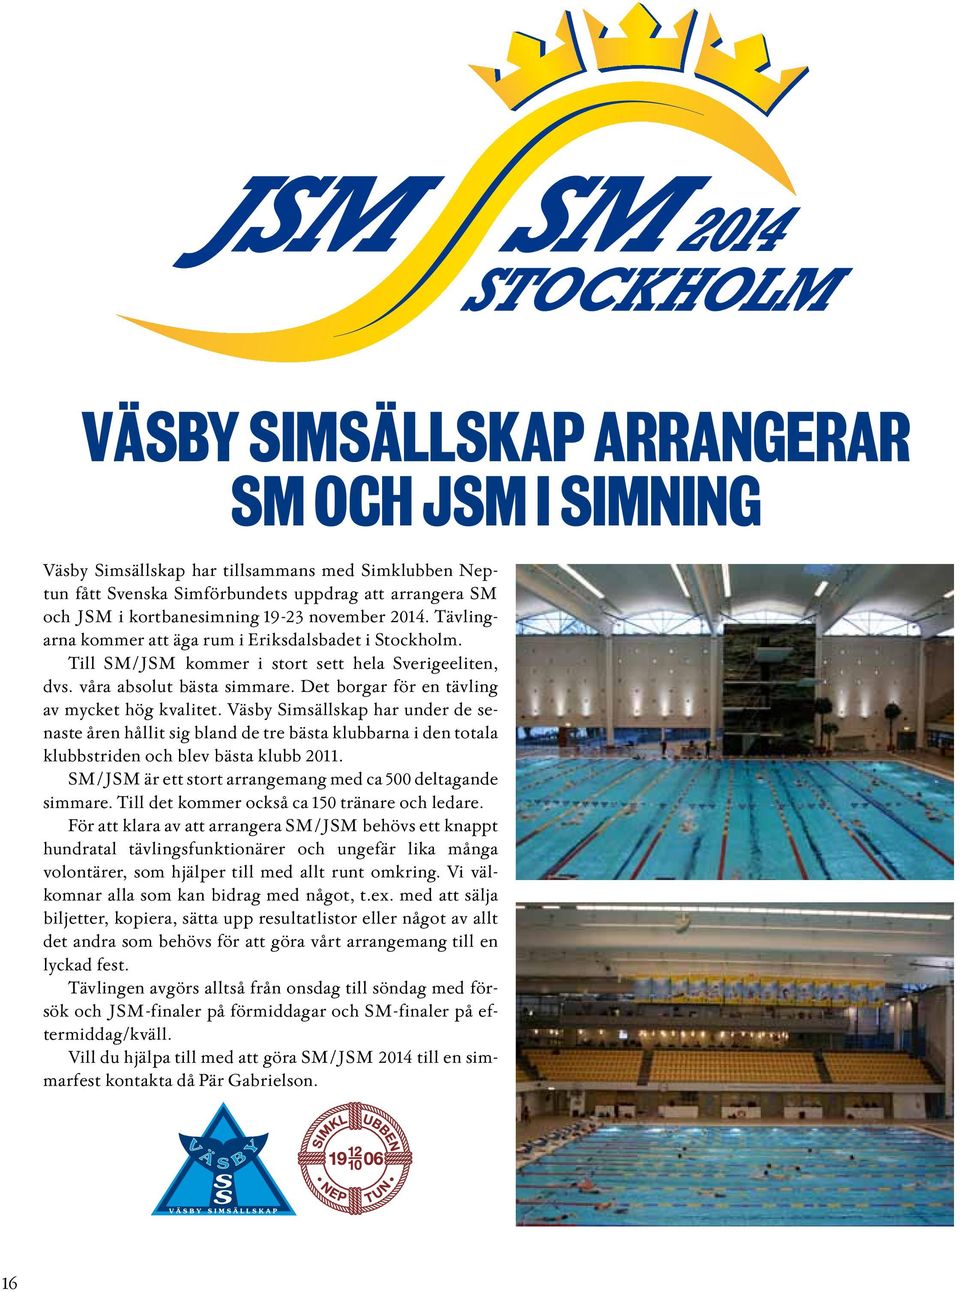 Det borgar för en tävling av mycket hög kvalitet. Väsby Simsällskap har under de senaste åren hållit sig bland de tre bästa klubbarna i den totala klubbstriden och blev bästa klubb 2011.